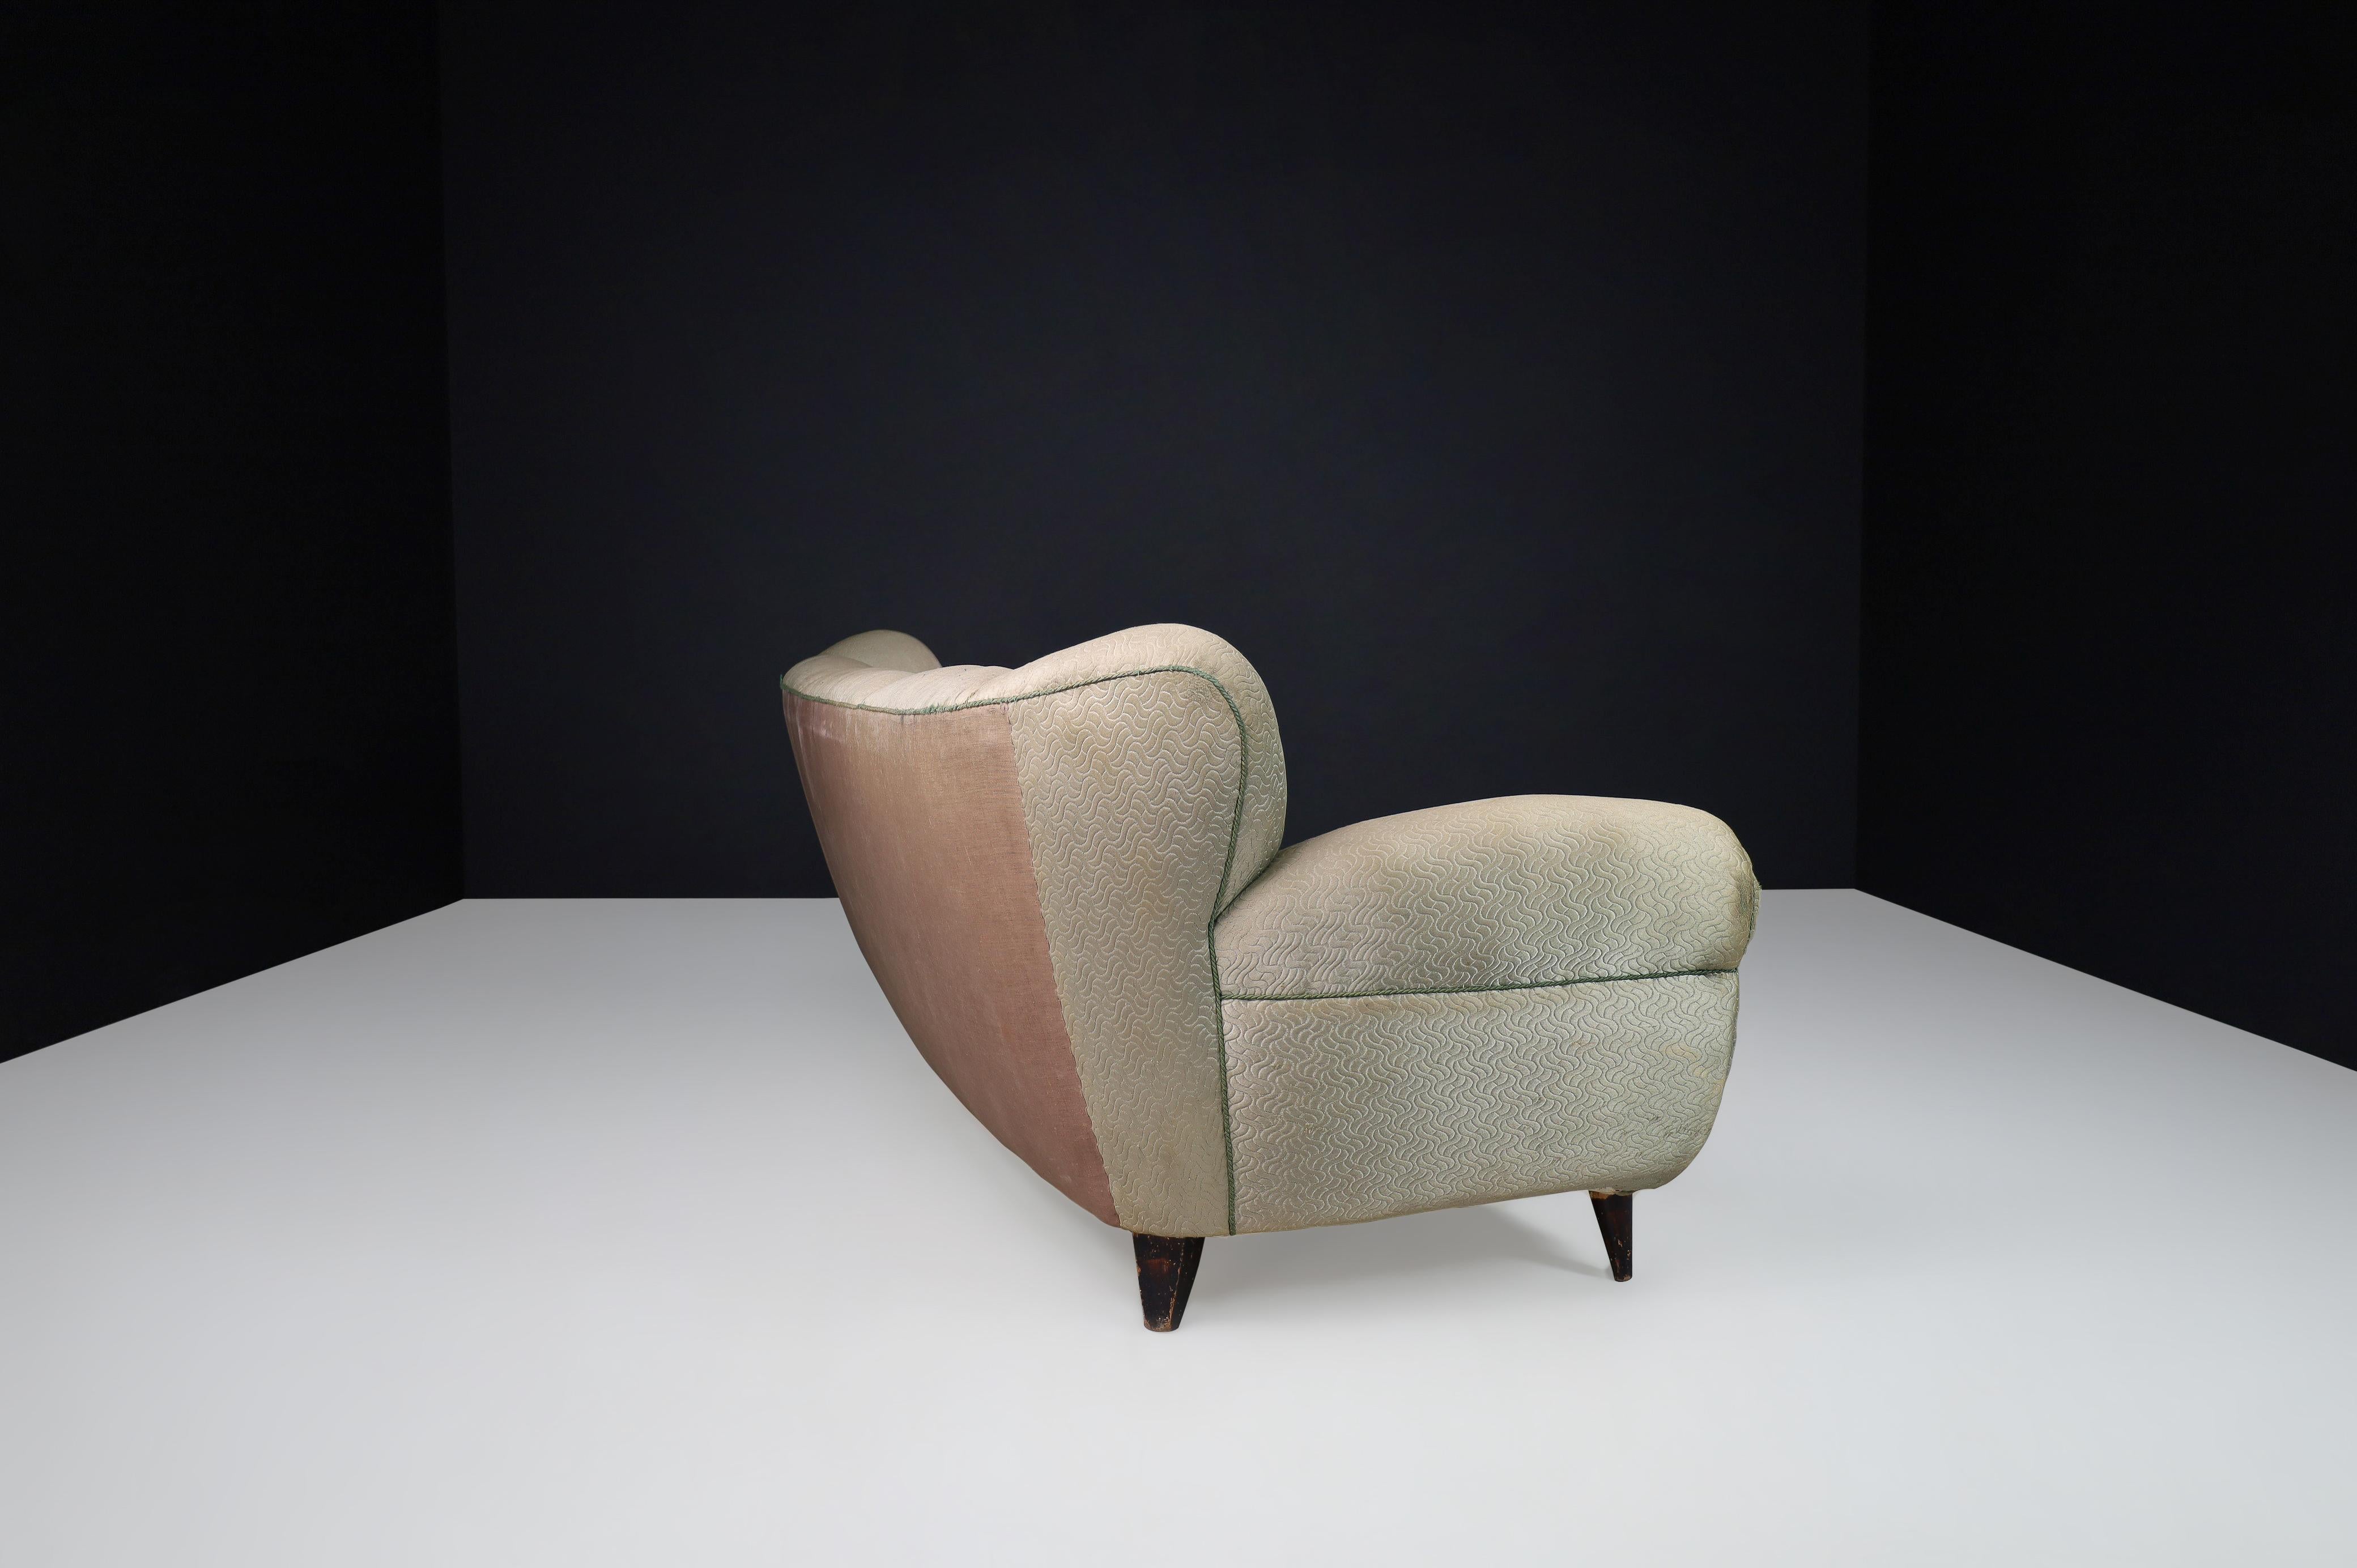 Guglielmo Ulrich Art Deco Sofa in Original Fabric, Italy 1930s For Sale 7